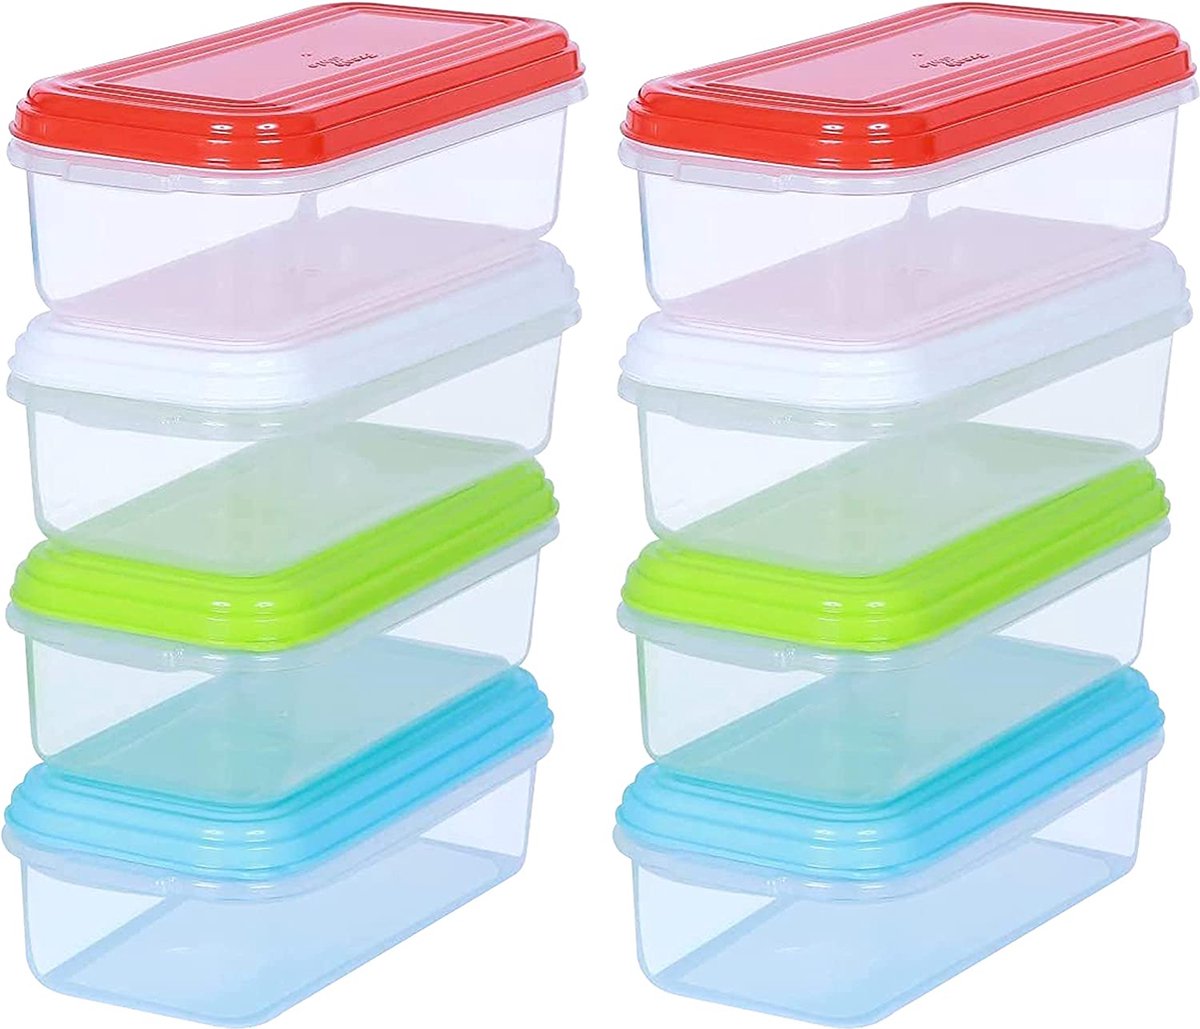 ARSUK Plastic Opbergdozen Baby Spenen Voeden Vriezer Voedsel Potten Containers (Pack of 8 Medium)